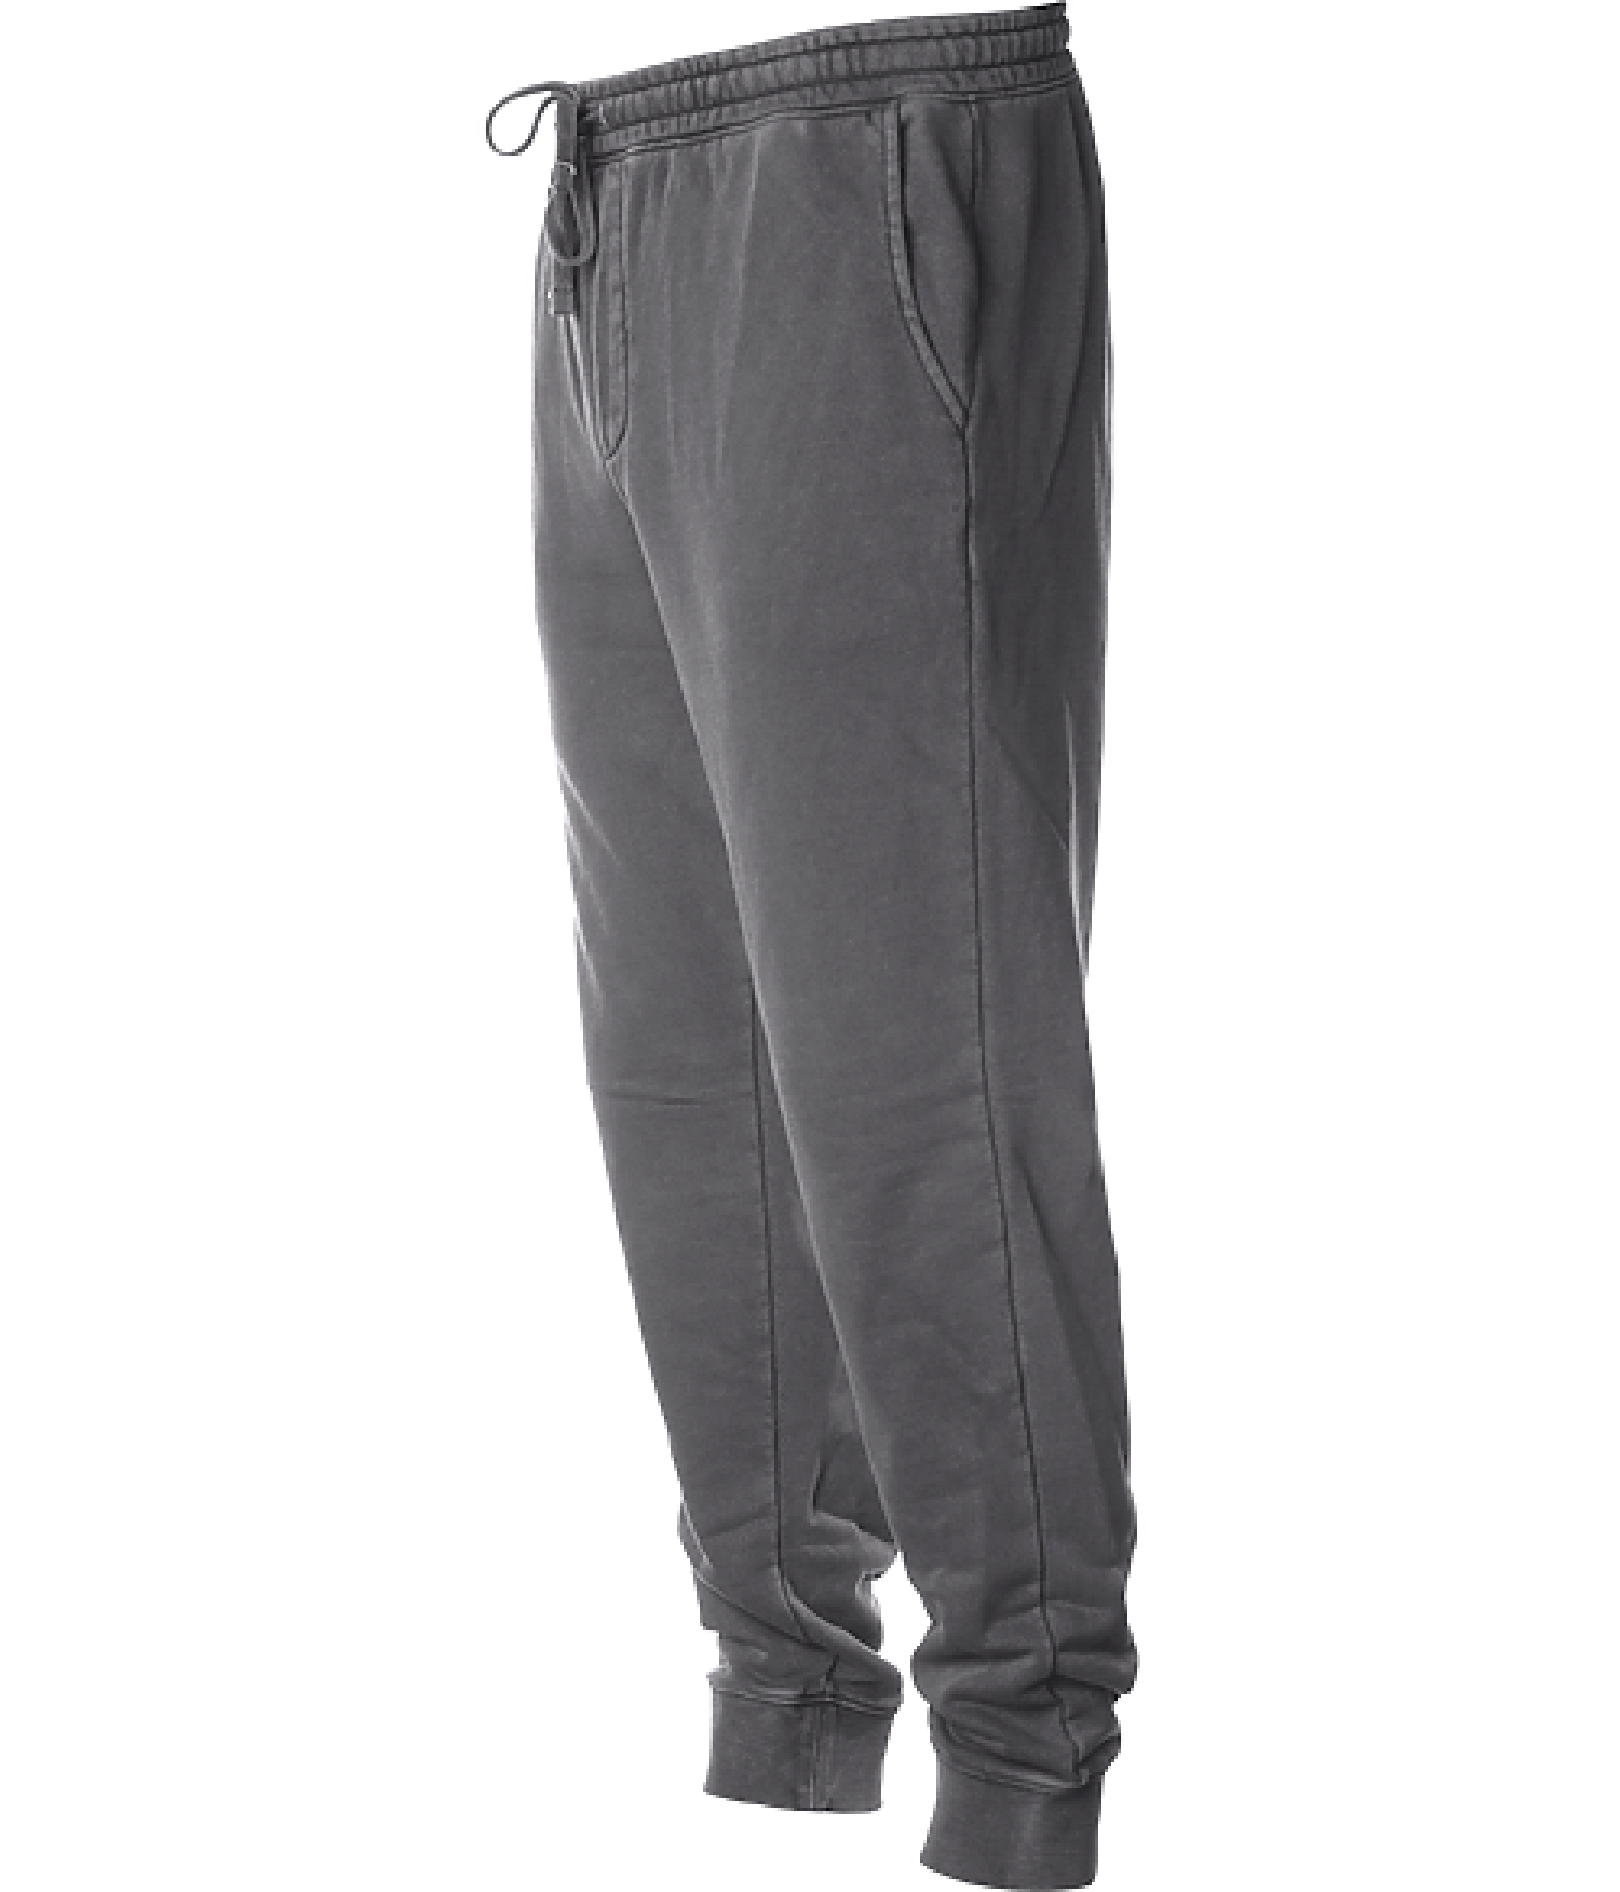 Phenomenally Soft Garment Dye Jogger Sweatpants (Black) – PHENOMENAL